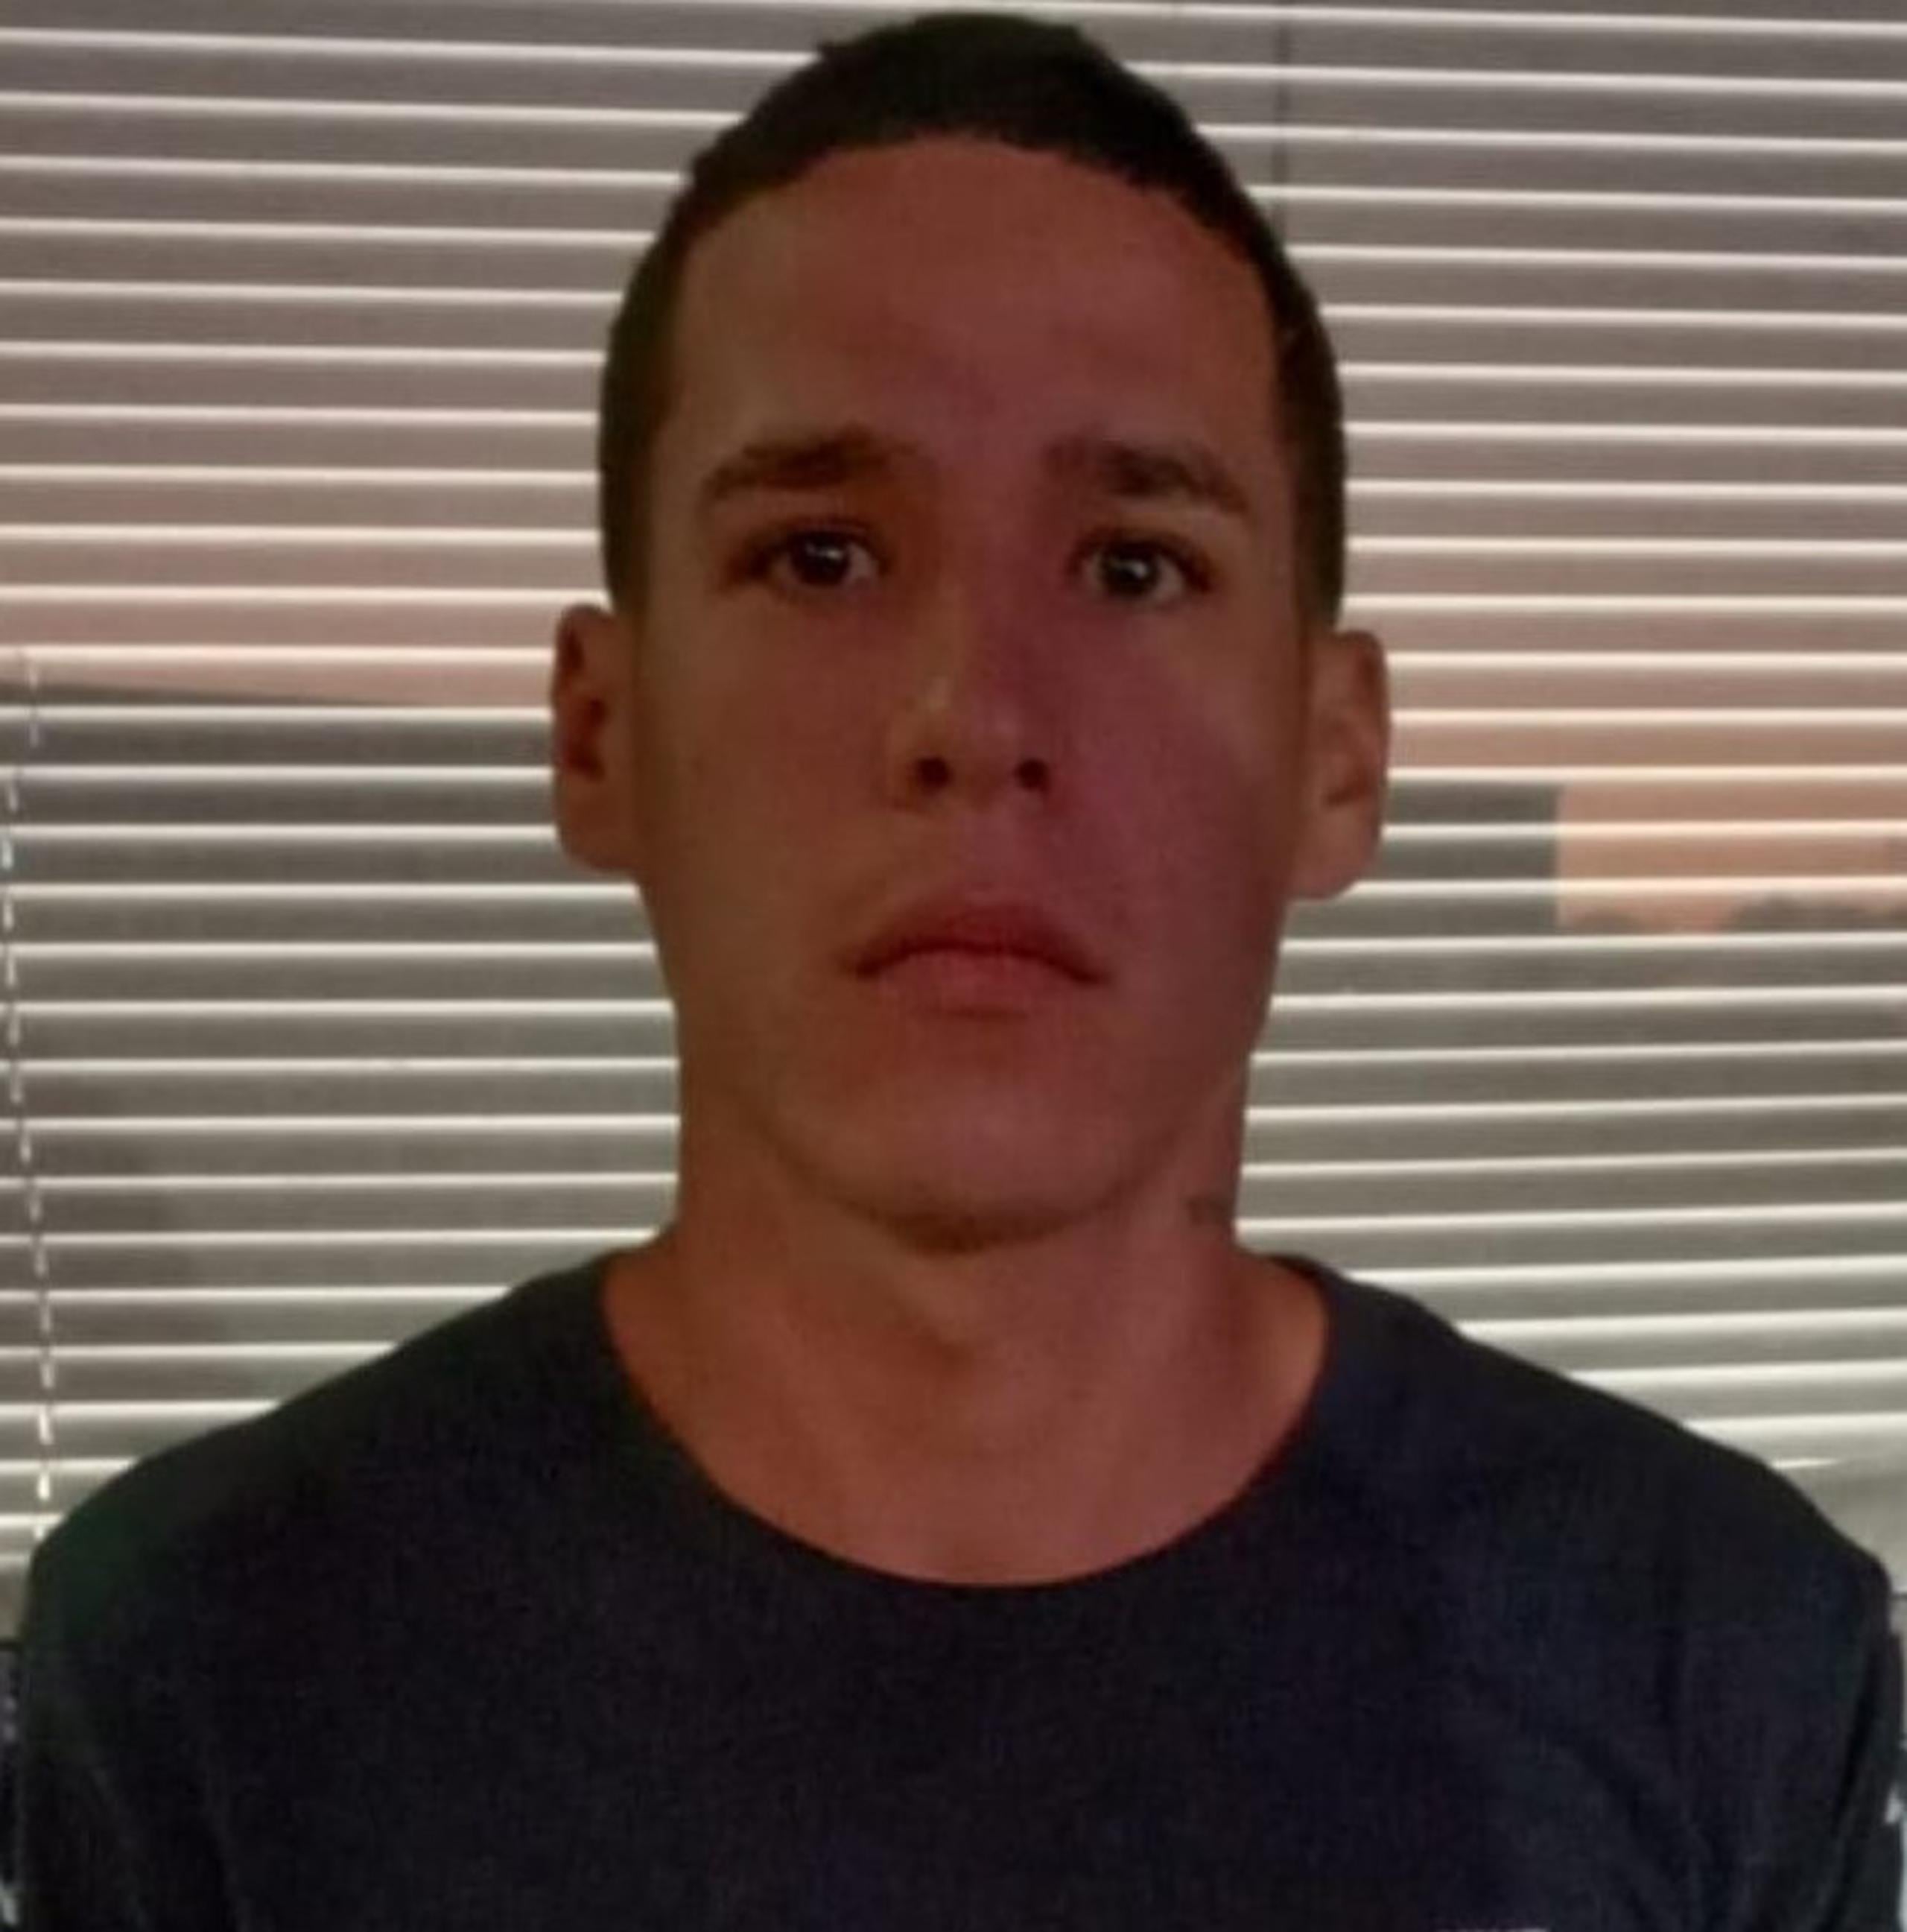 Christian José Rivera Rosario de 25 años, contra quien pesaba una orden de arresto federal emitida por la Administración de Control de Drogas (DEA) del estado de Nueva York, fue capturado en Toa Alta.